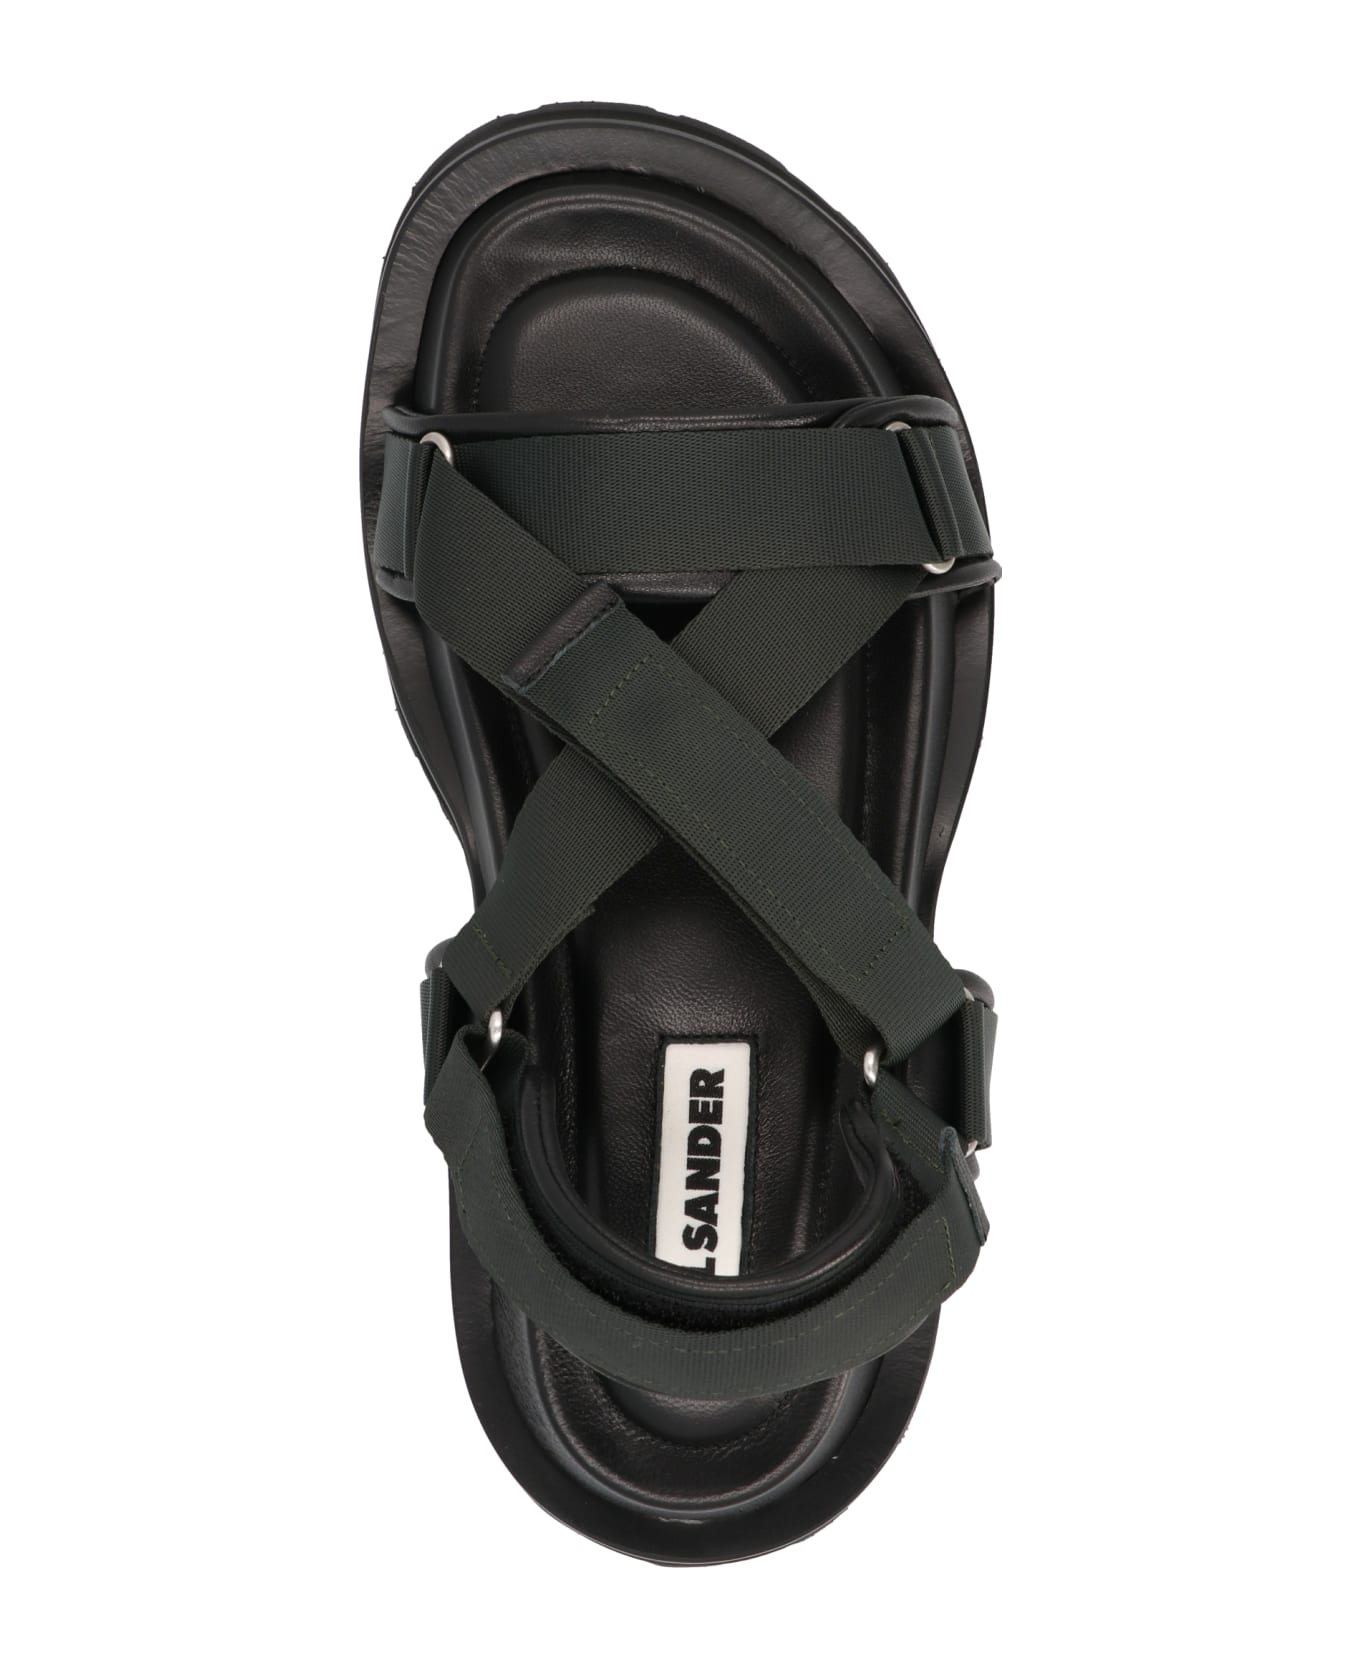 Jil Sander Black Leather Blend Sandals - Black